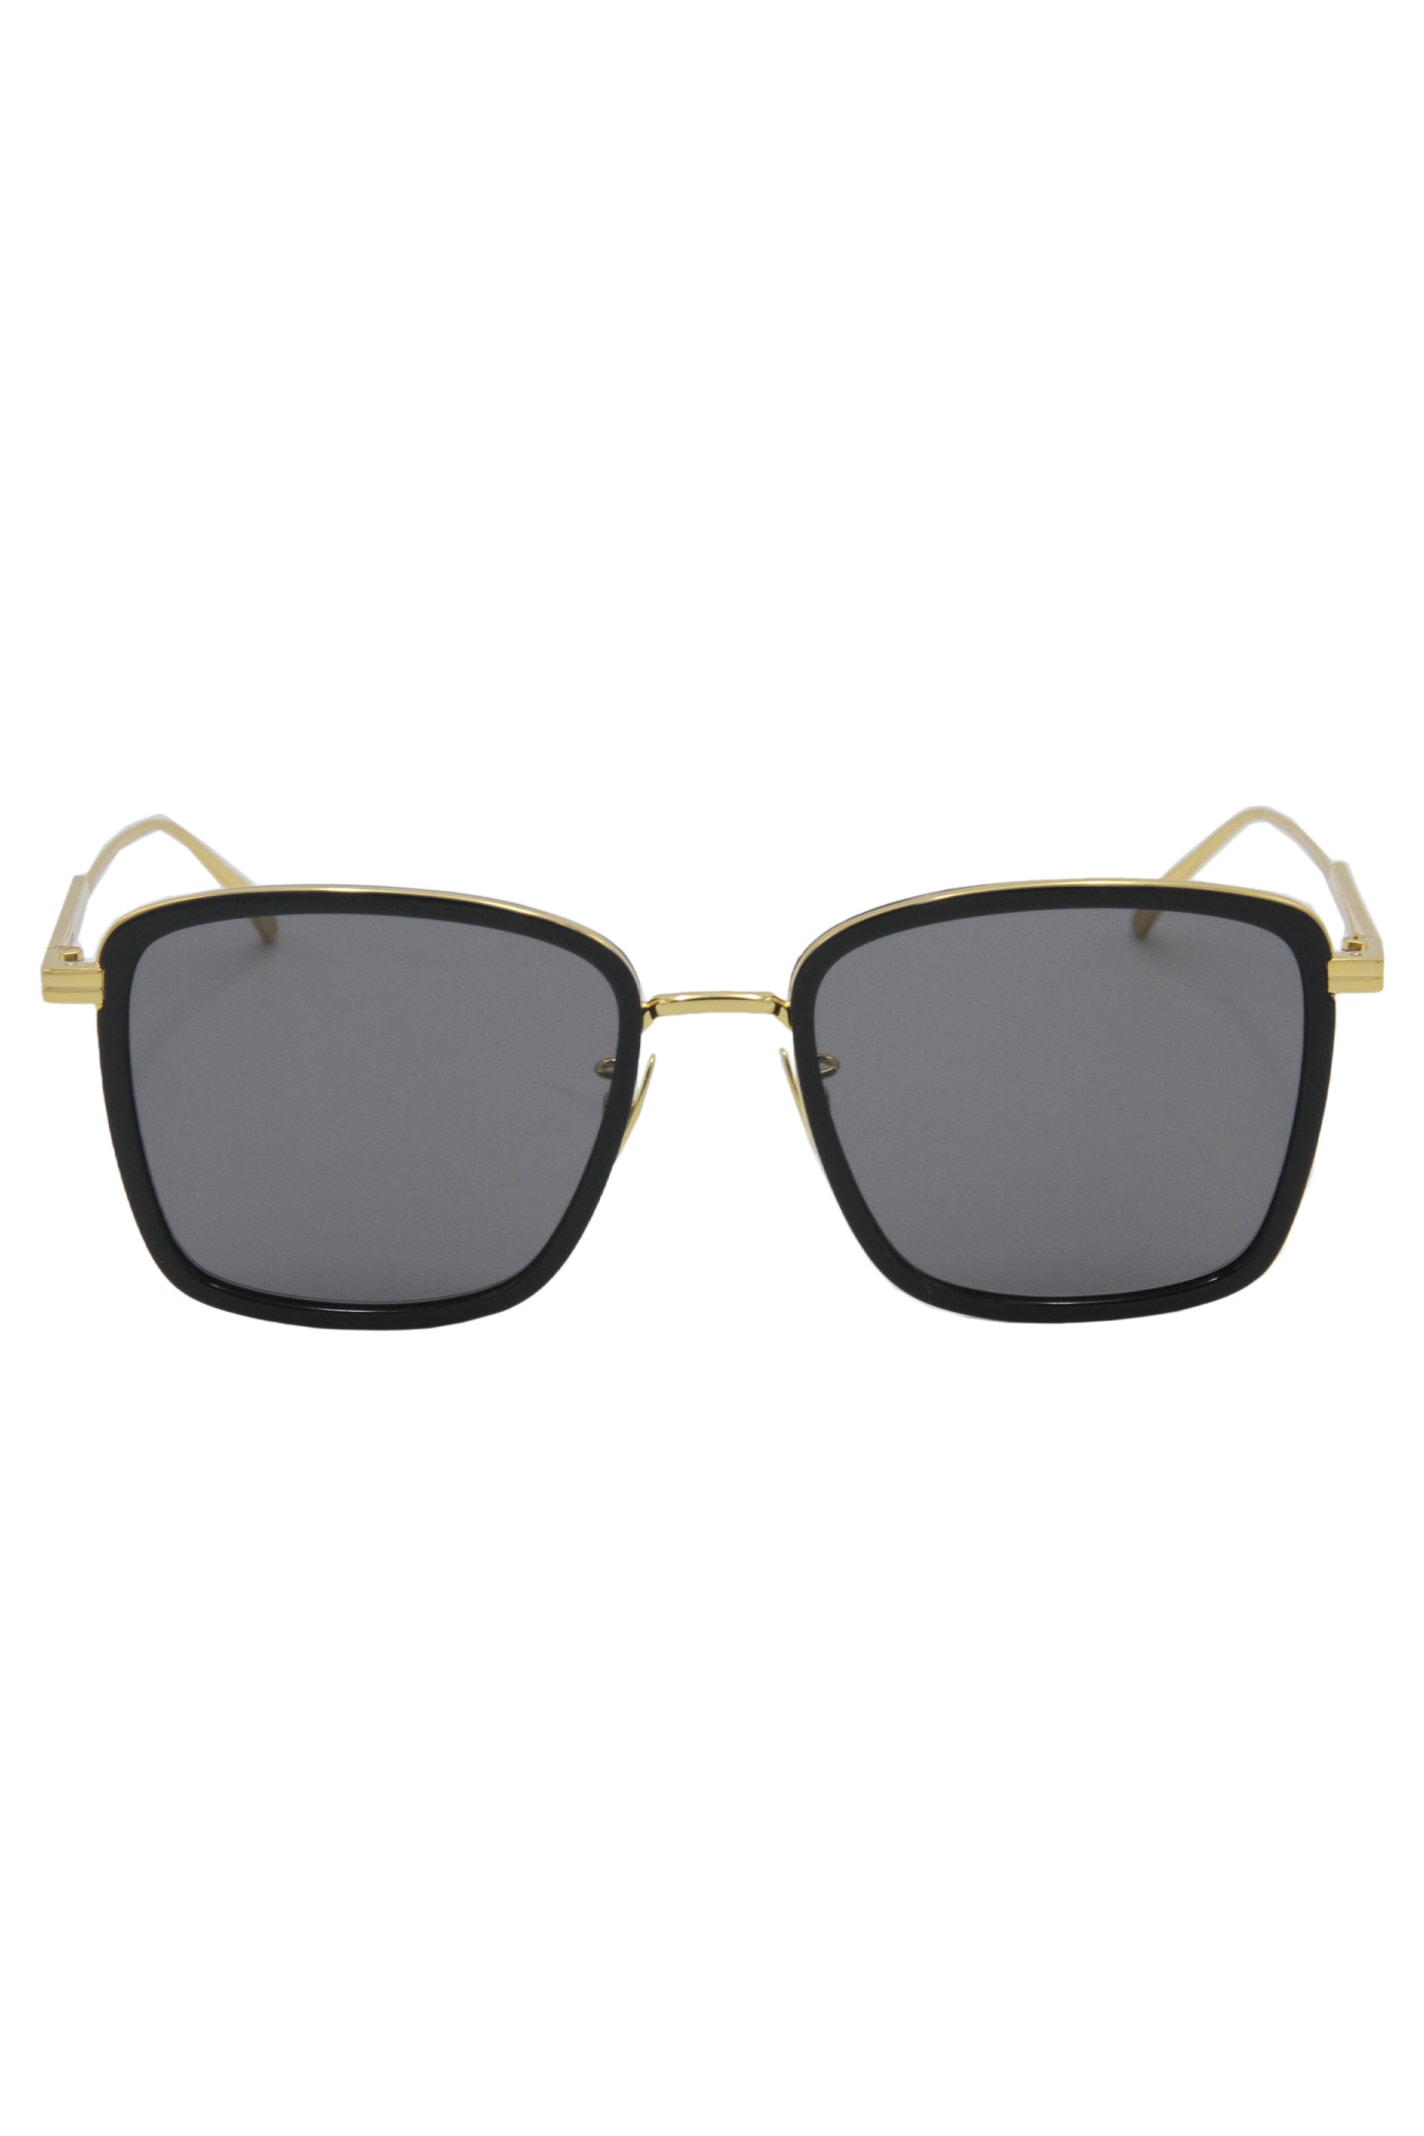 Bottega Veneta Squared Sunglasses In Black